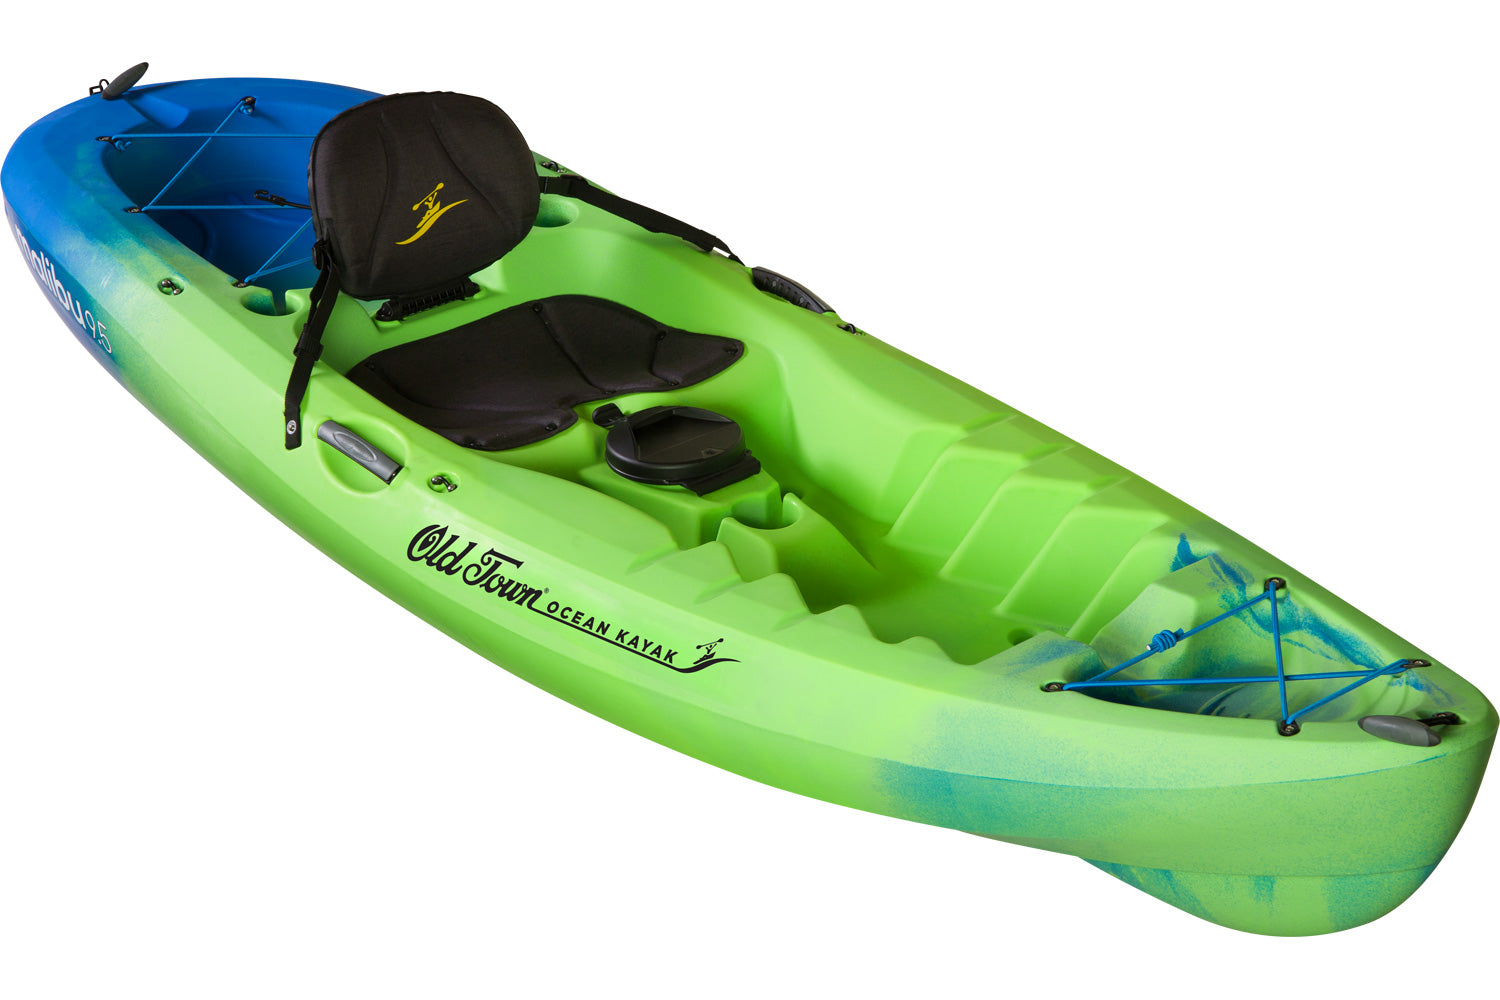 An angled Ocean kayak malibu 9.5 in Blue/green or ahi colours